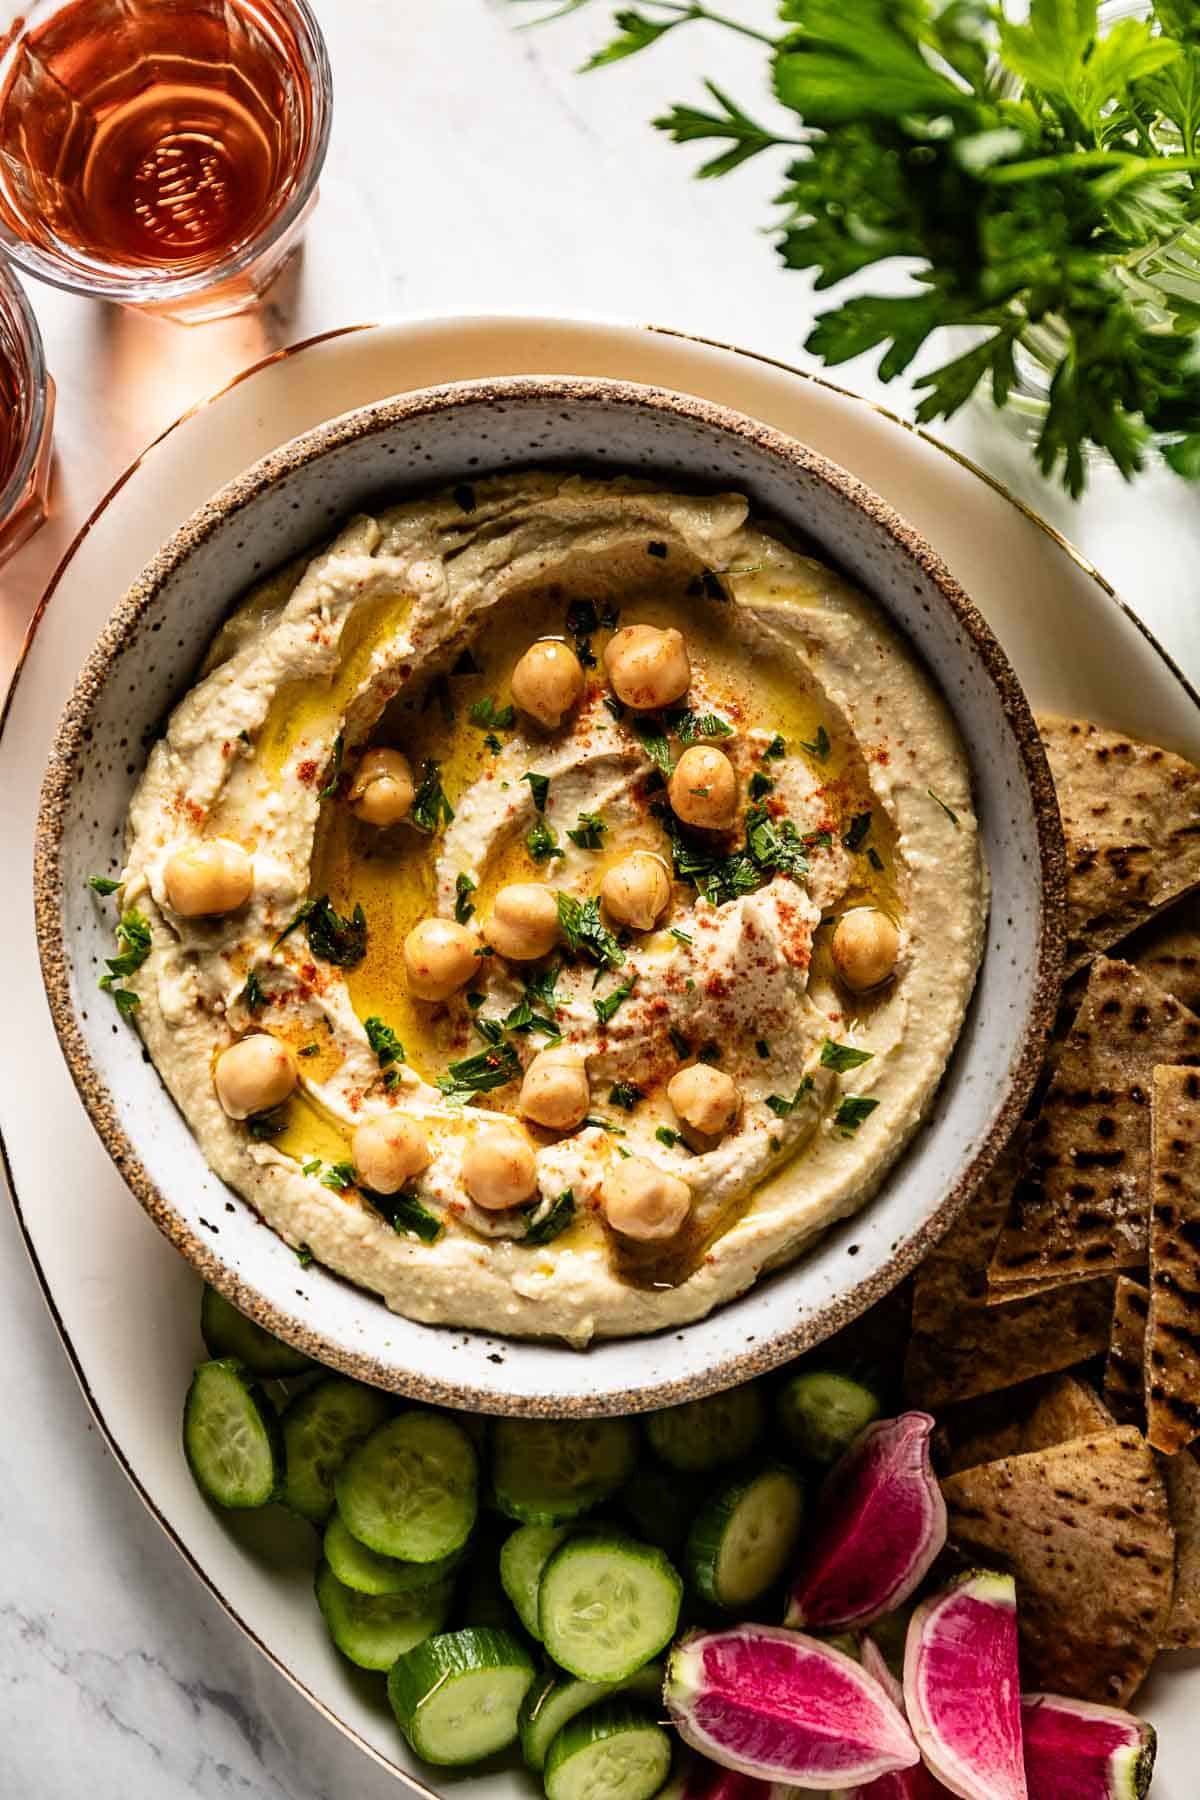 https://foolproofliving.com/wp-content/uploads/2014/03/Mediterranean-hummus-recipe.jpg